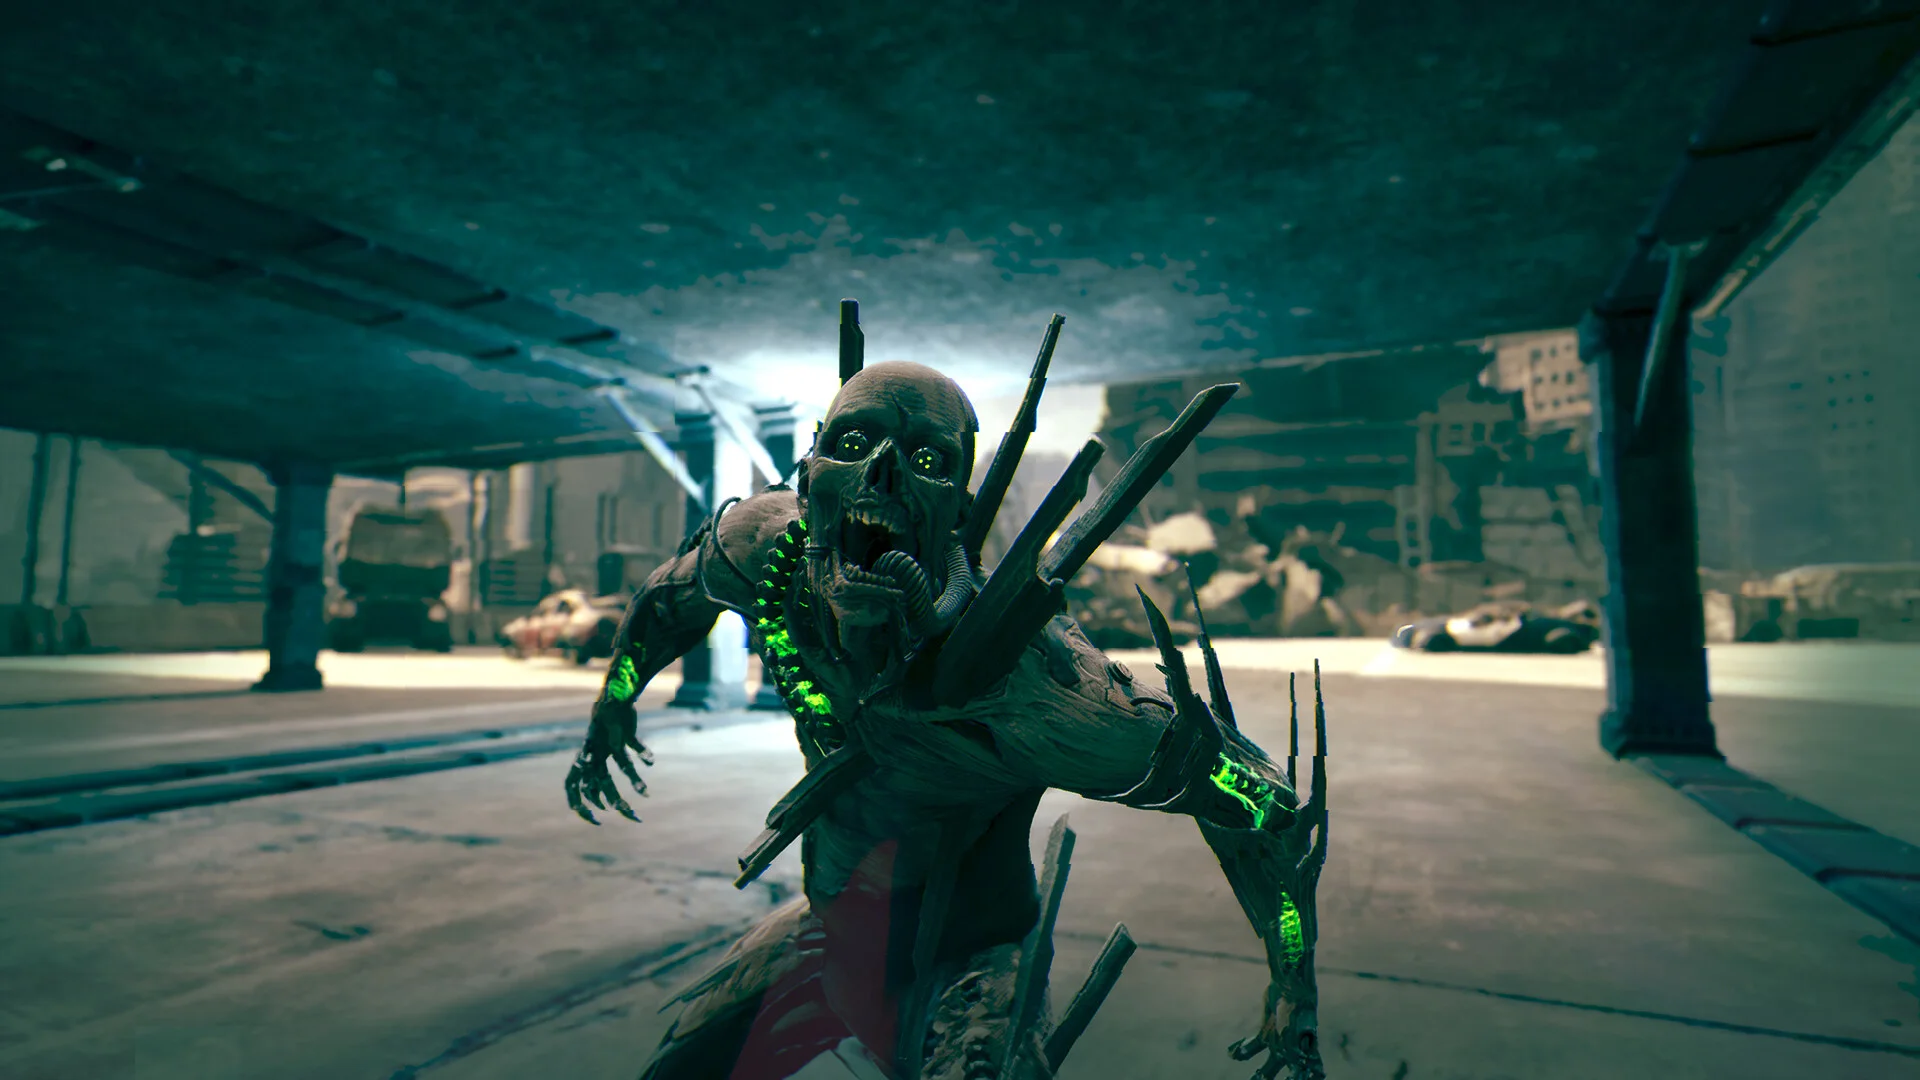 Авторы Ghostrunner 2 представили открывающий ролик игры - изображение 1